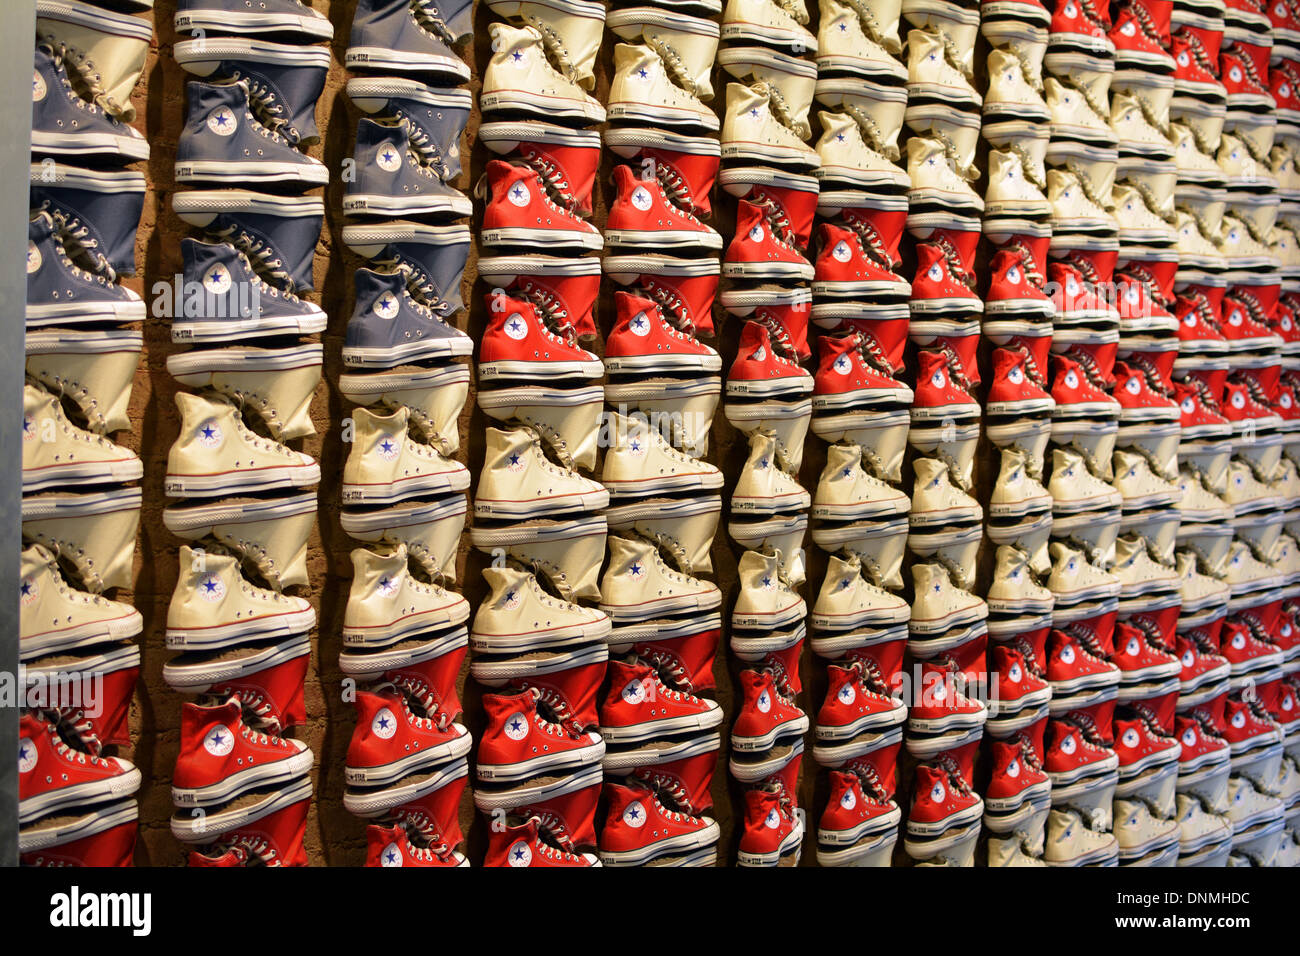 Converse sneakers stabilite nel modello di una bandiera americana alla Converse store su Broadway in Greenwich Village di New York City. Foto Stock